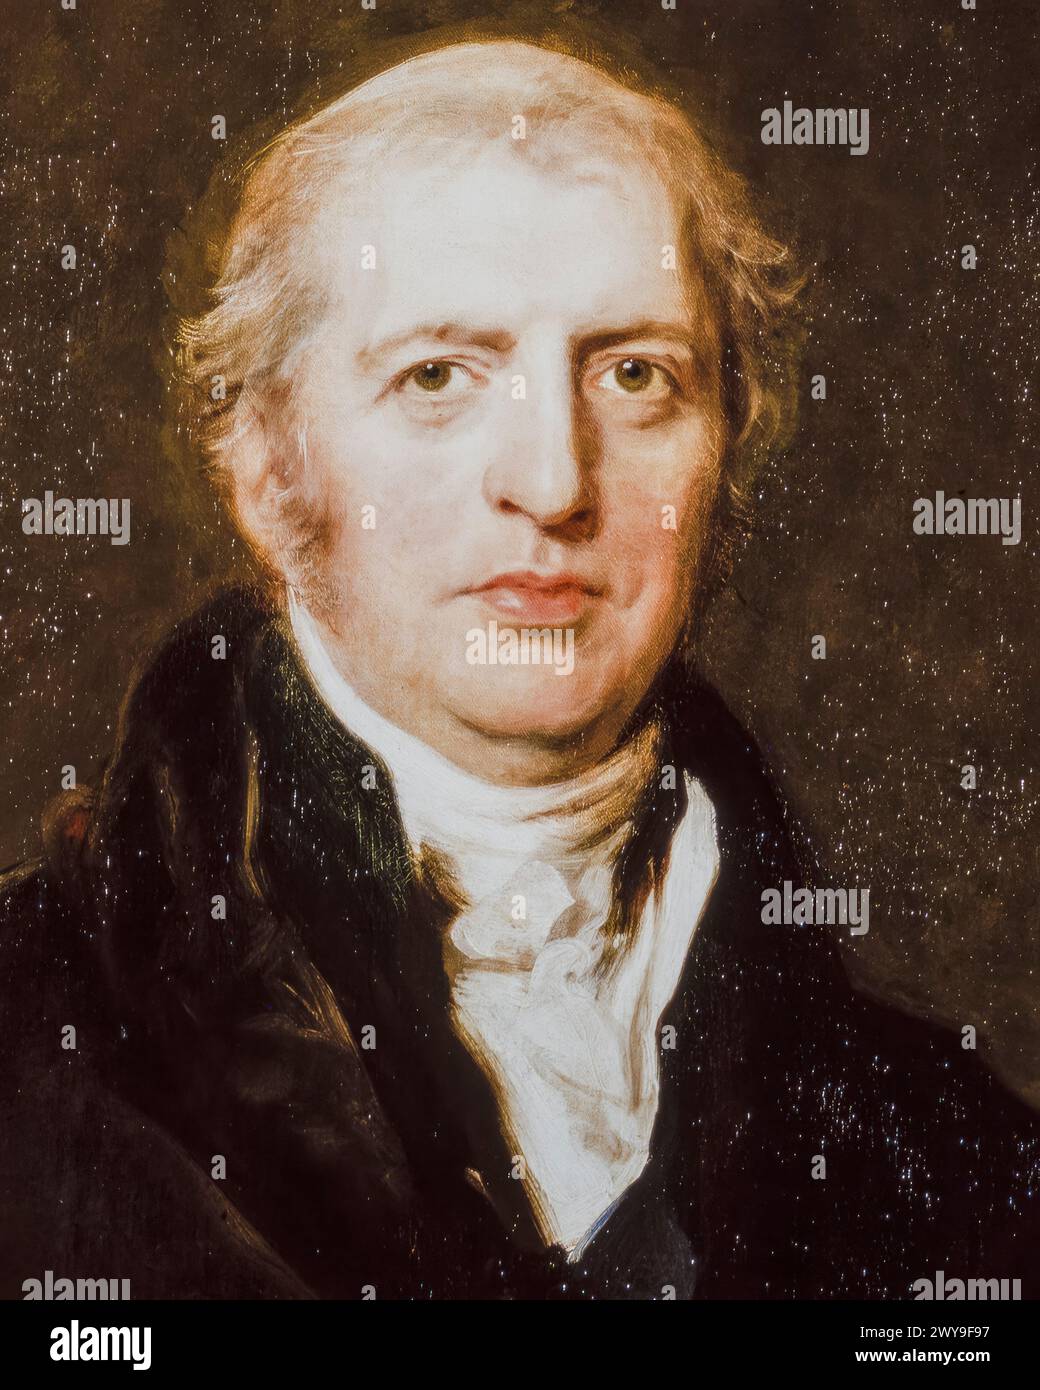 Robert Jenkinson, II conte di Liverpool (1770-1828), politico Tory e primo ministro del Regno Unito, 1812-1827, ritratto a olio su tela di Sir Thomas Lawrence, prima del 1827 Foto Stock